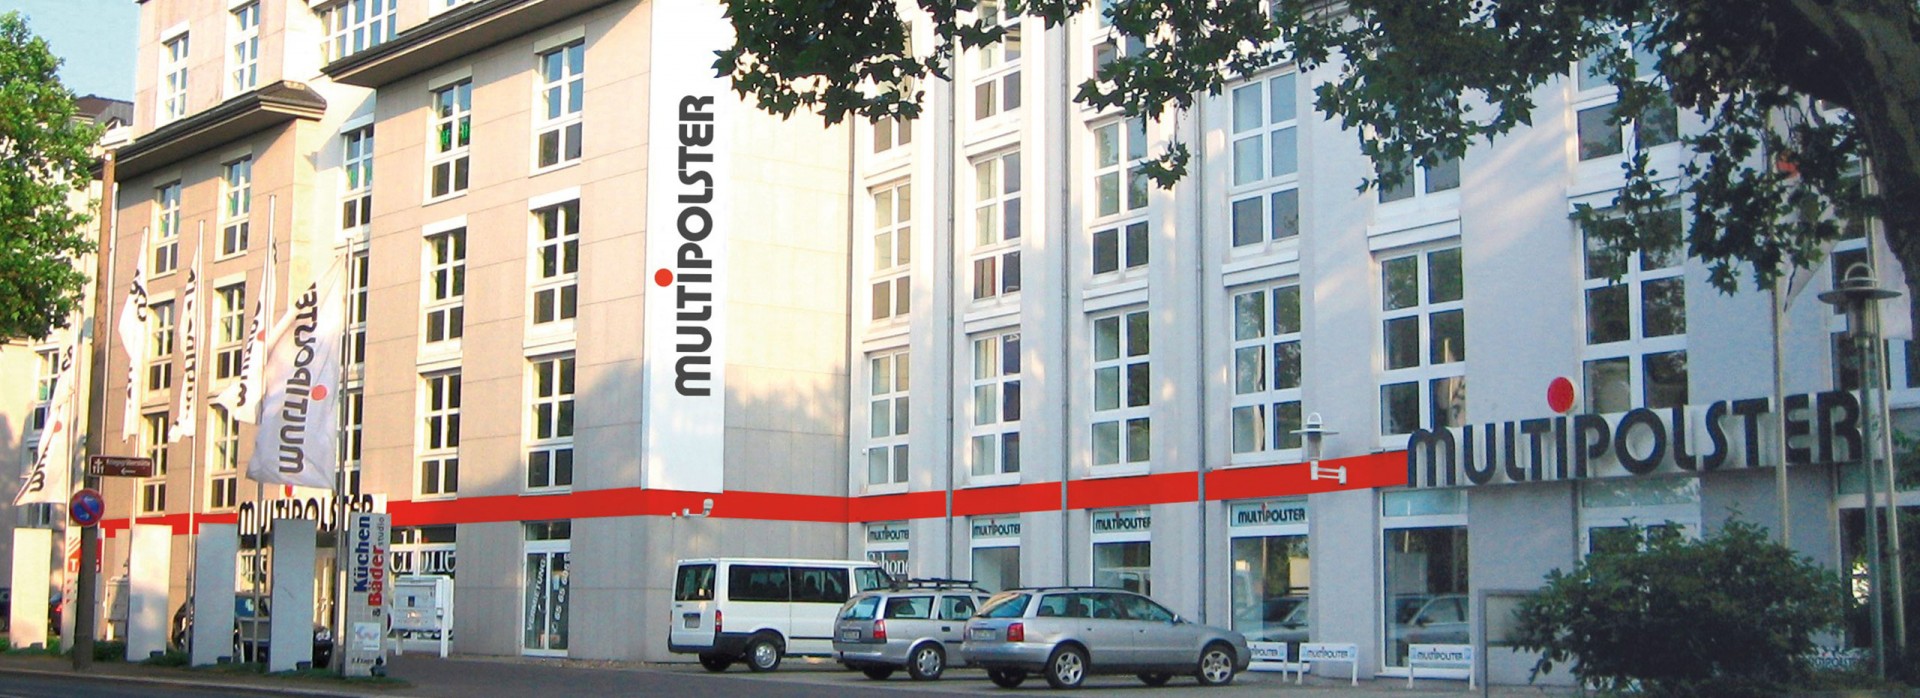 Multipolster -  Dresden Bremer Str., Bremer Straße 65 in Dresden